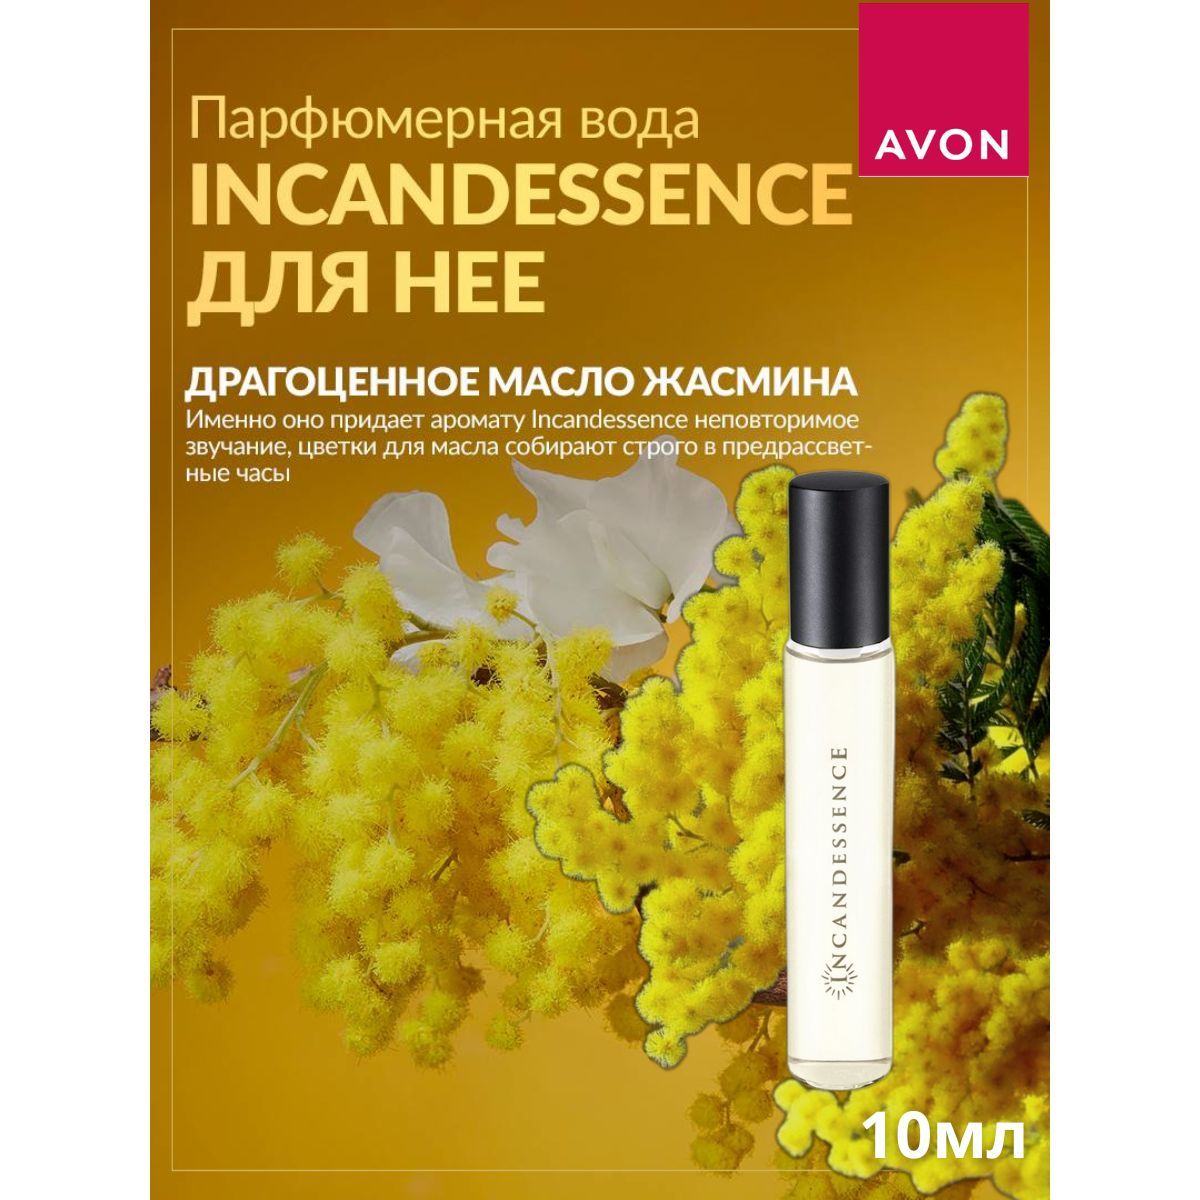 Avon парфюмерная вода incandessence отзывы